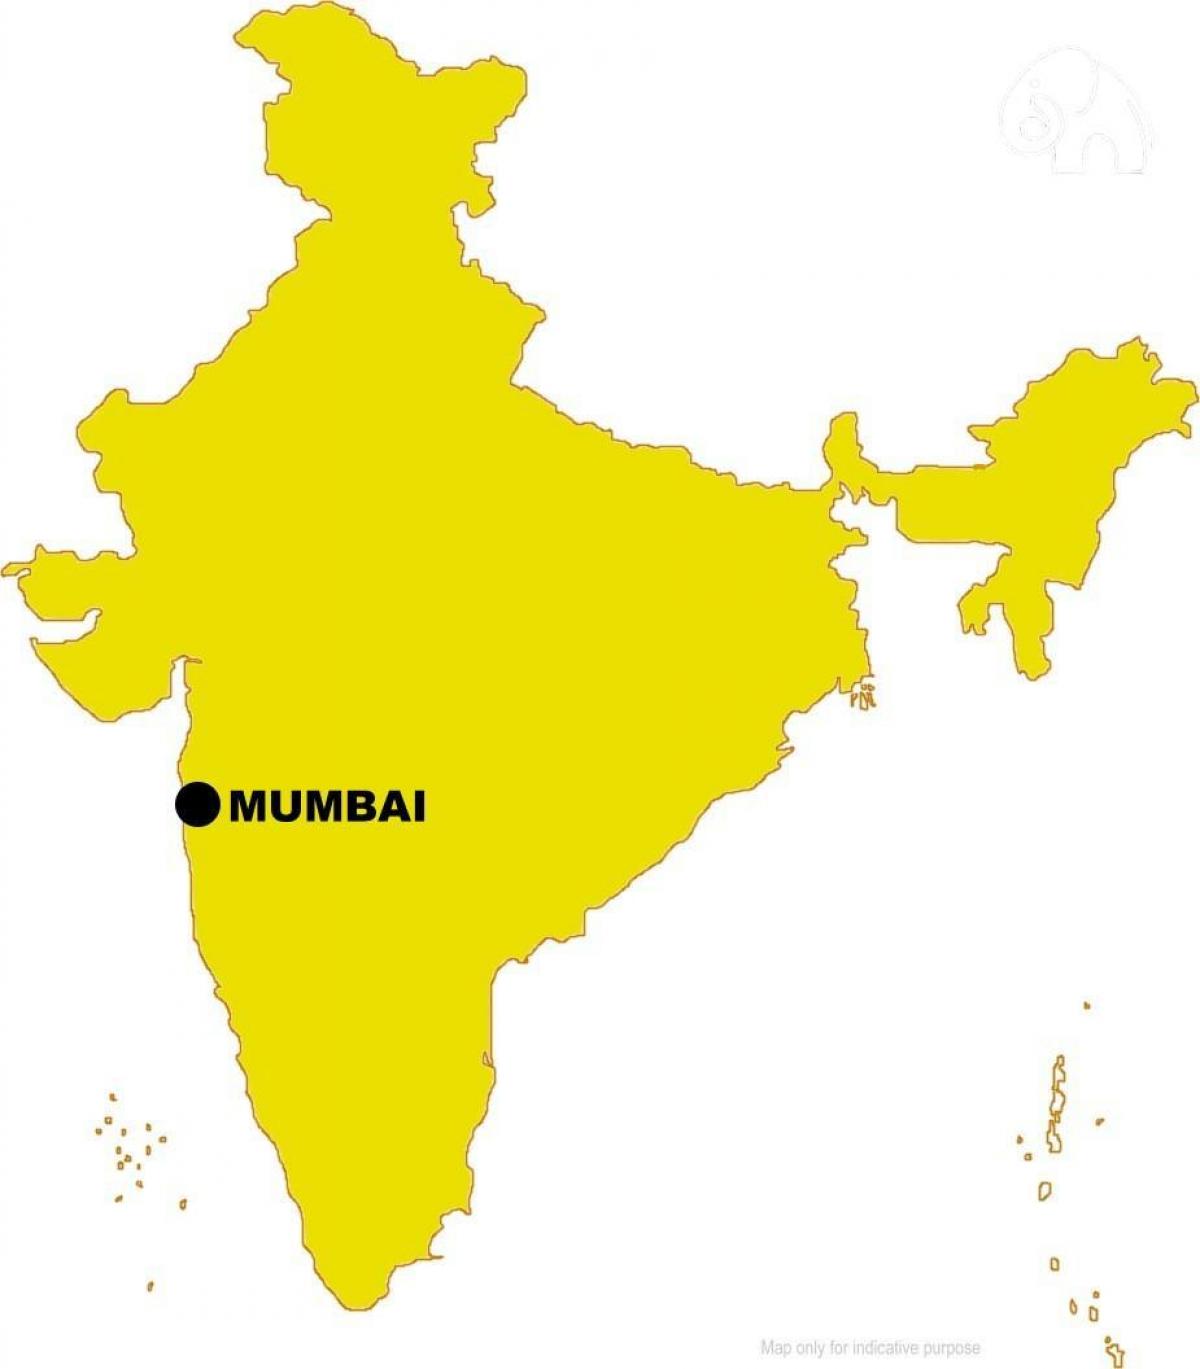 Mumbai di peta